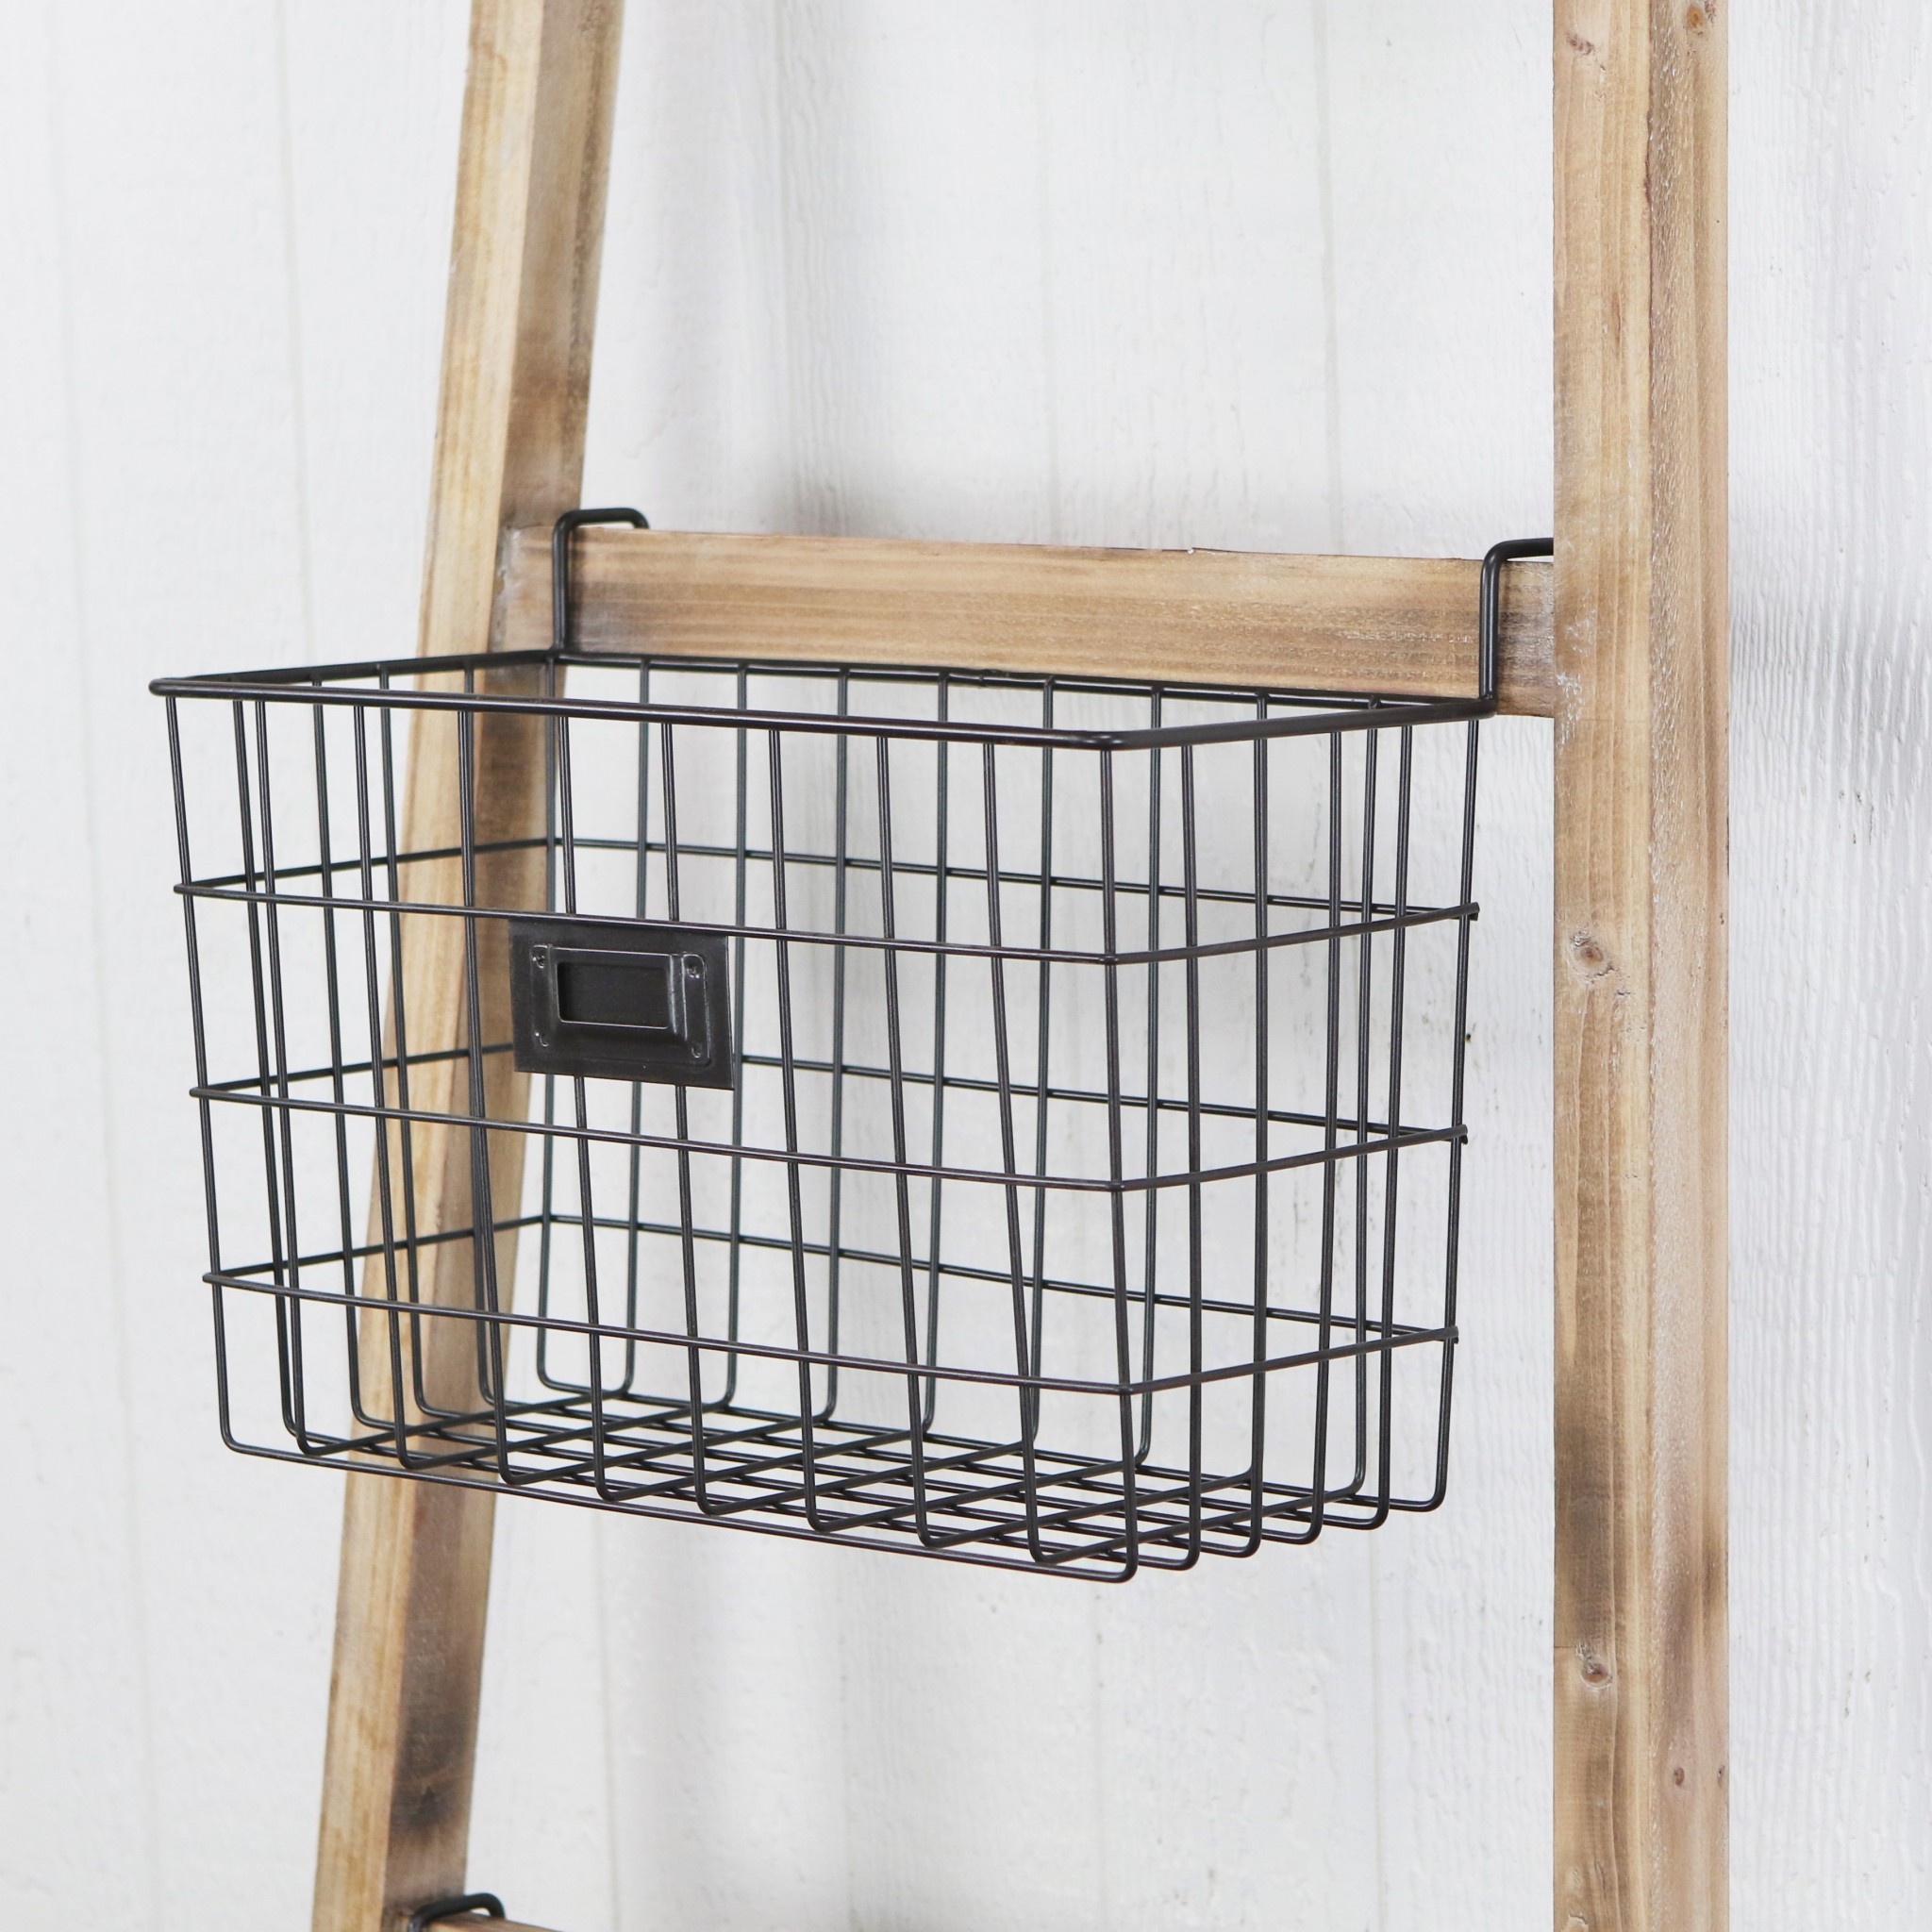 Wooden Ladder Storage Piece with 4 Baskets